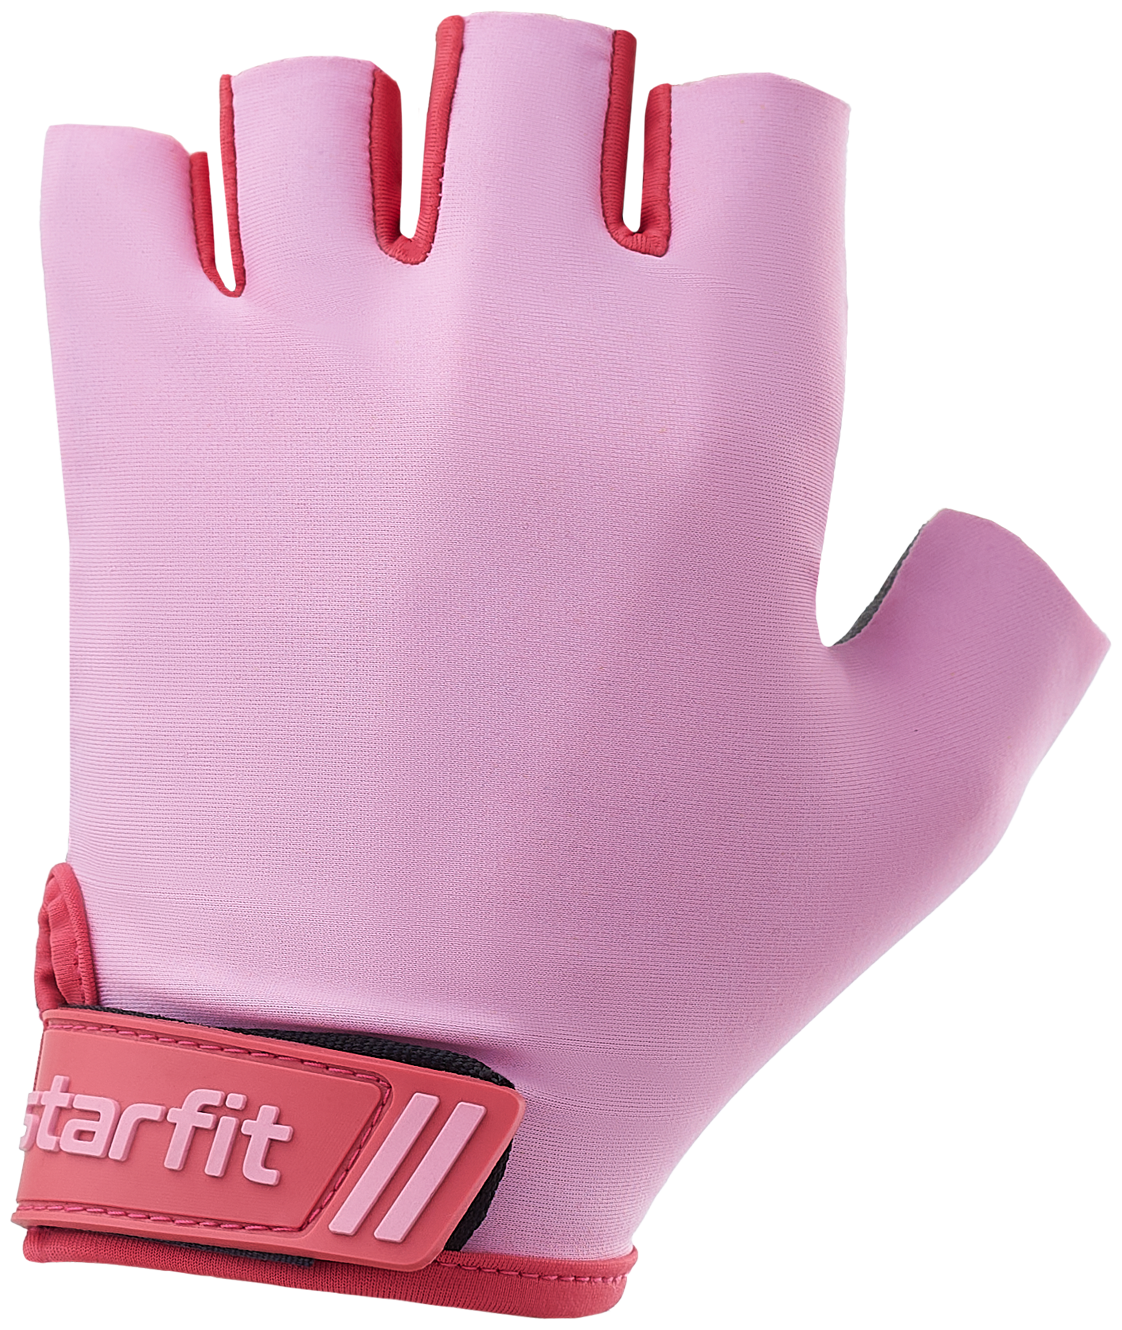 Перчатки для фитнеса Starfit Wg-101, нежно-розовый размер M